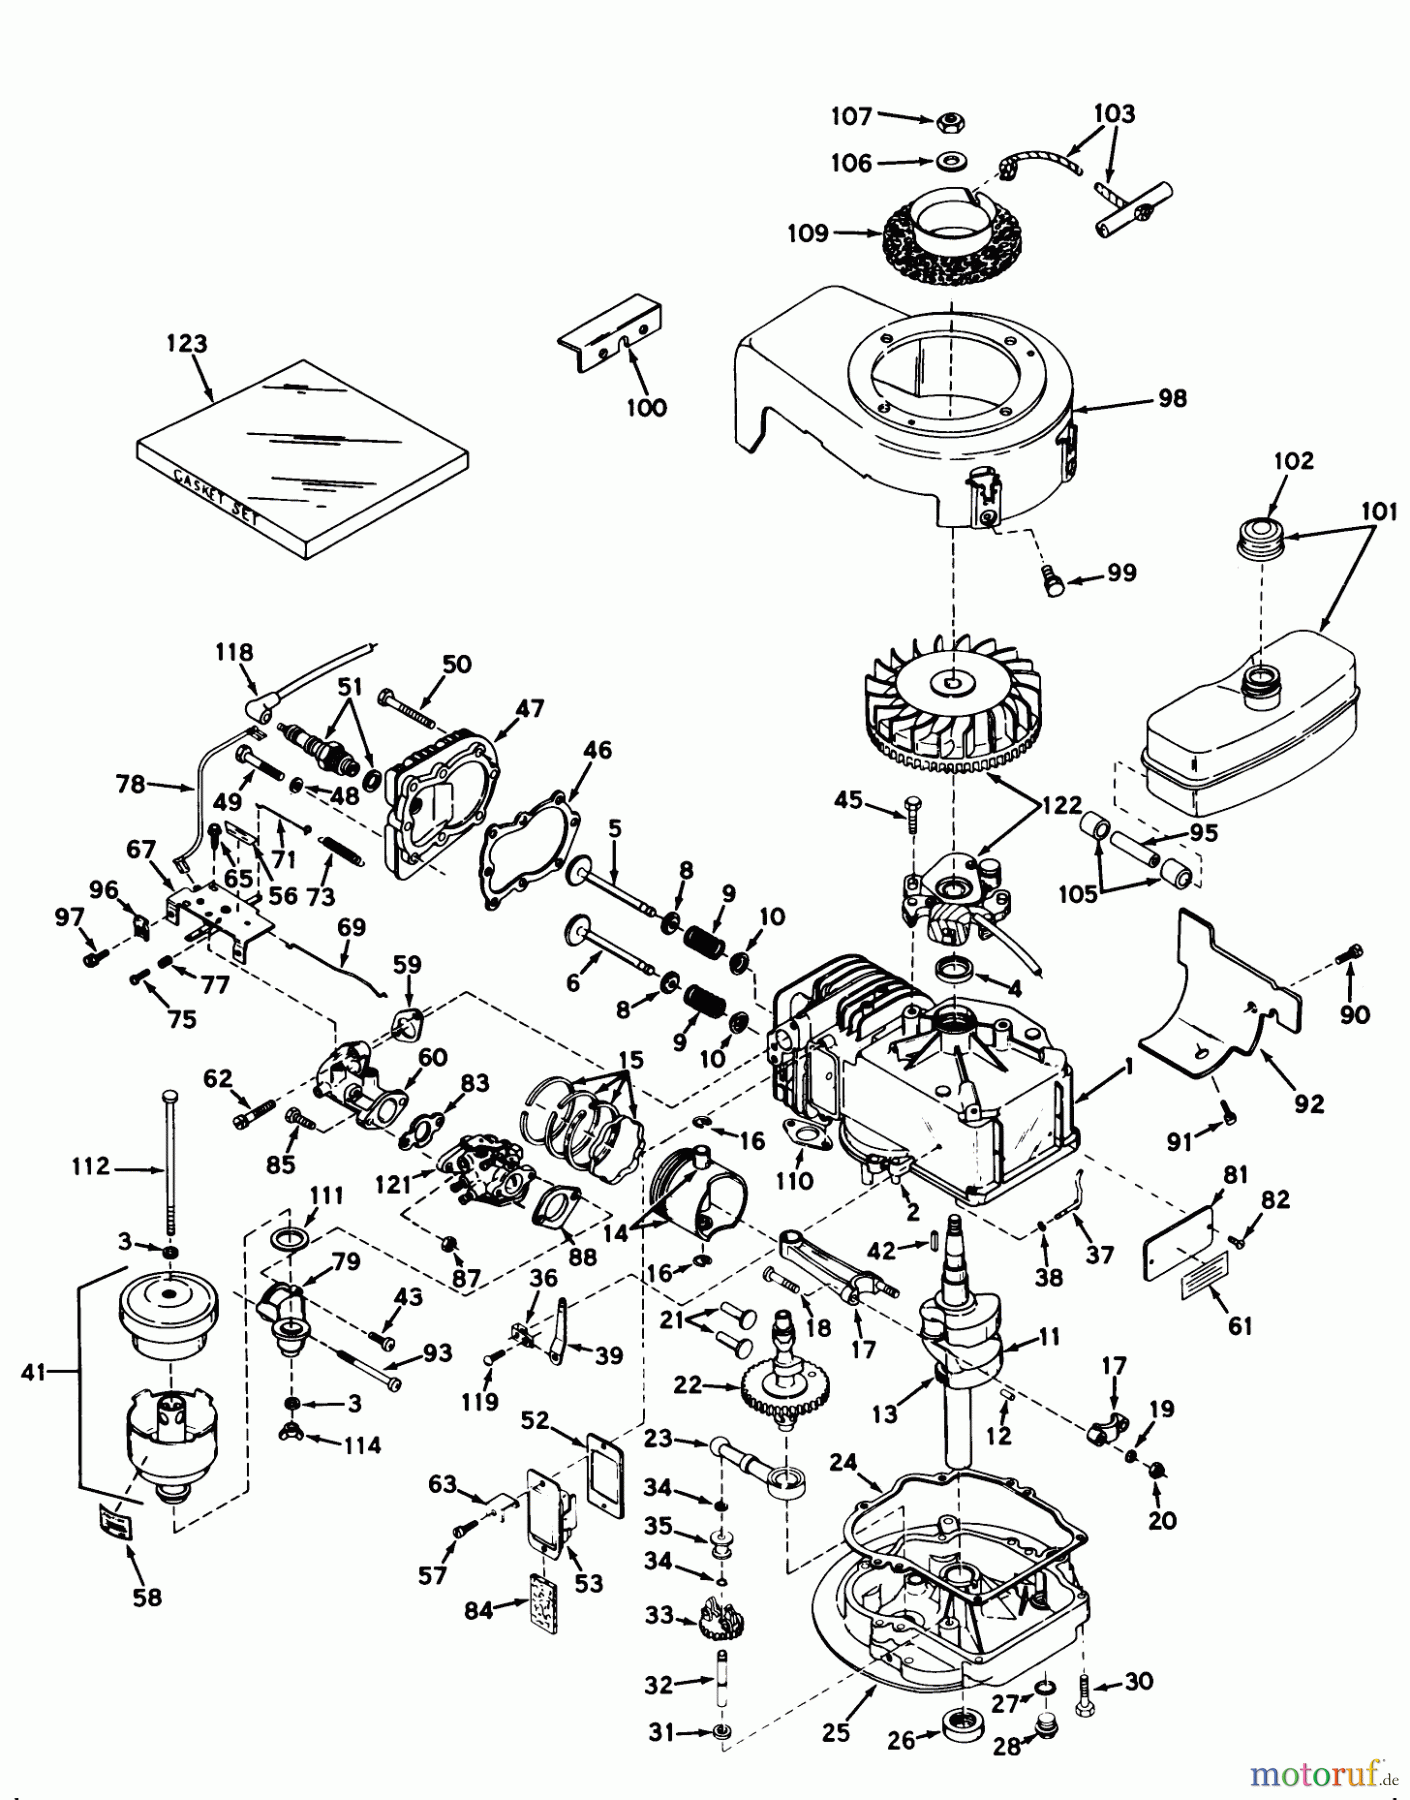  Toro Neu Mowers, Walk-Behind Seite 2 21100 - Toro Whirlwind Lawnmower, 1968 (8000001-8999999) ENGINE MODEL LAV35-40369G